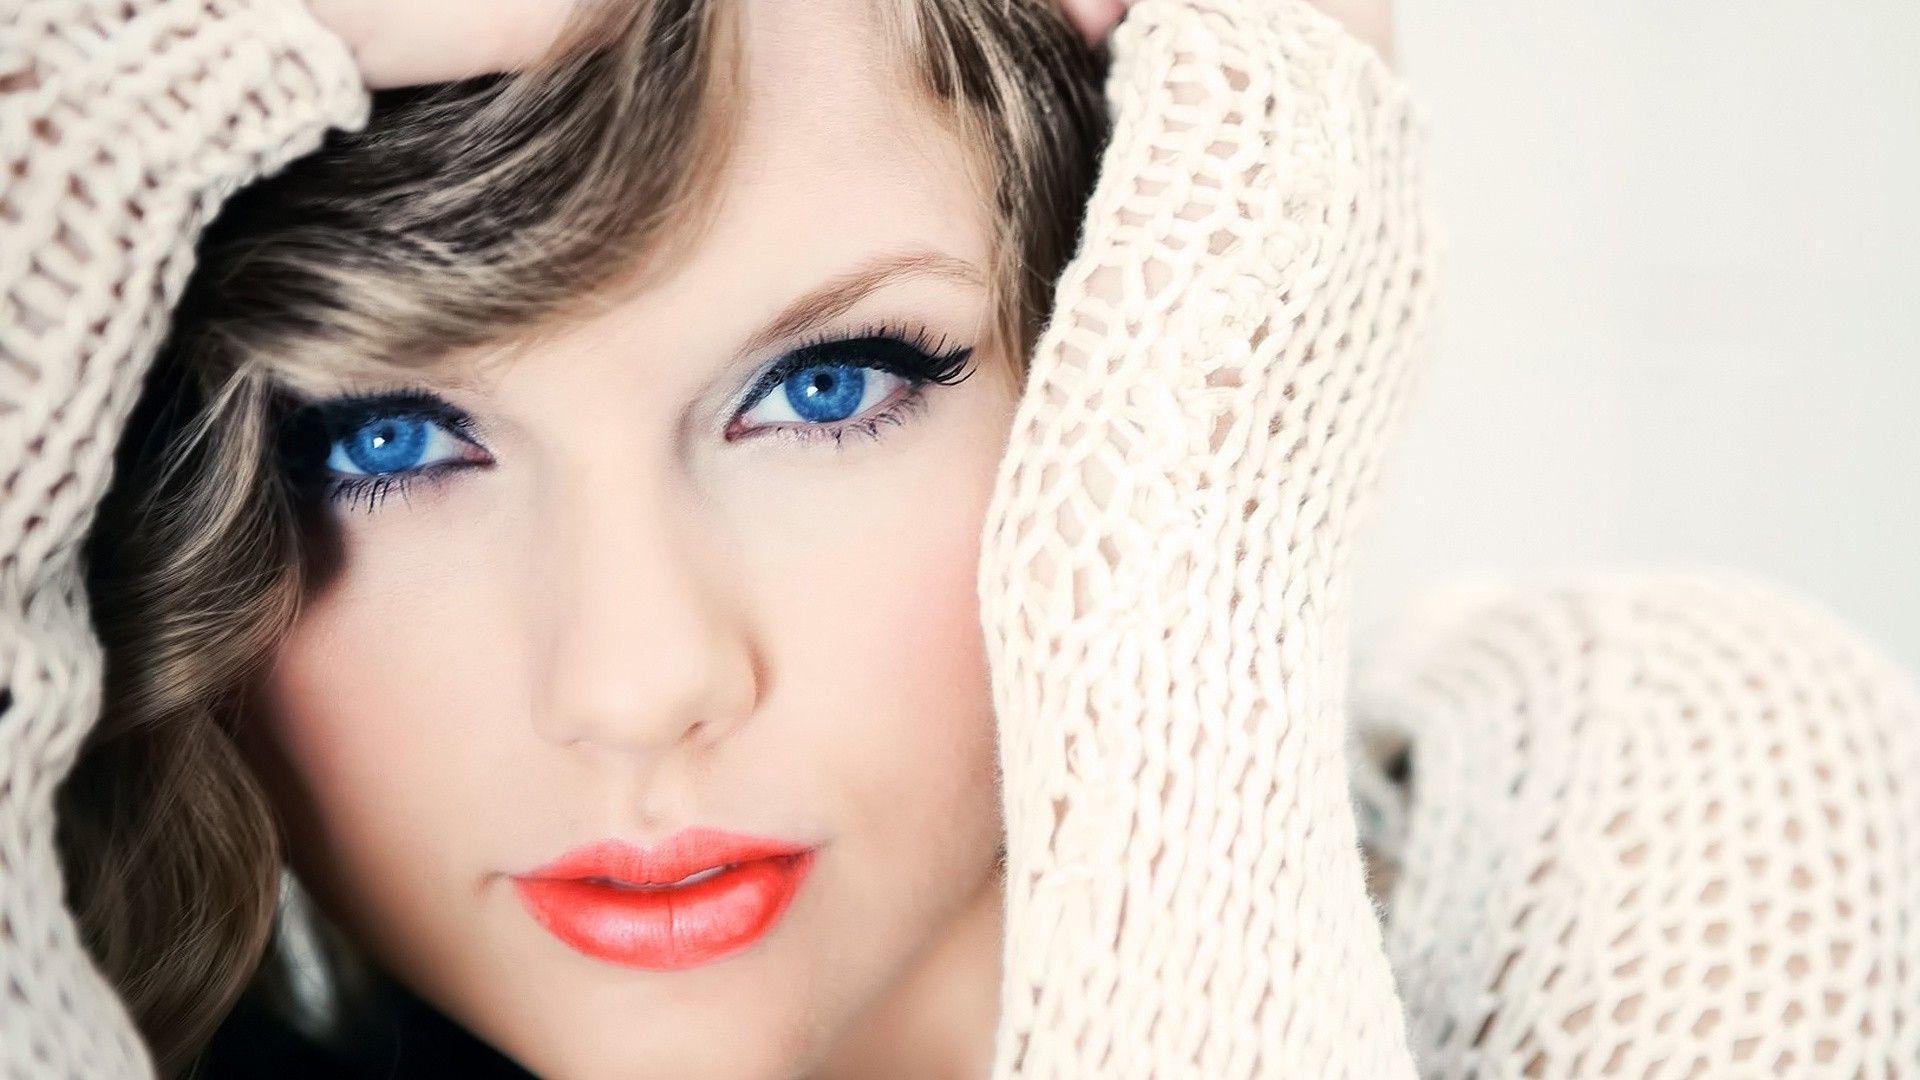 Taylor Swift HD Wallpaper Free Downloads